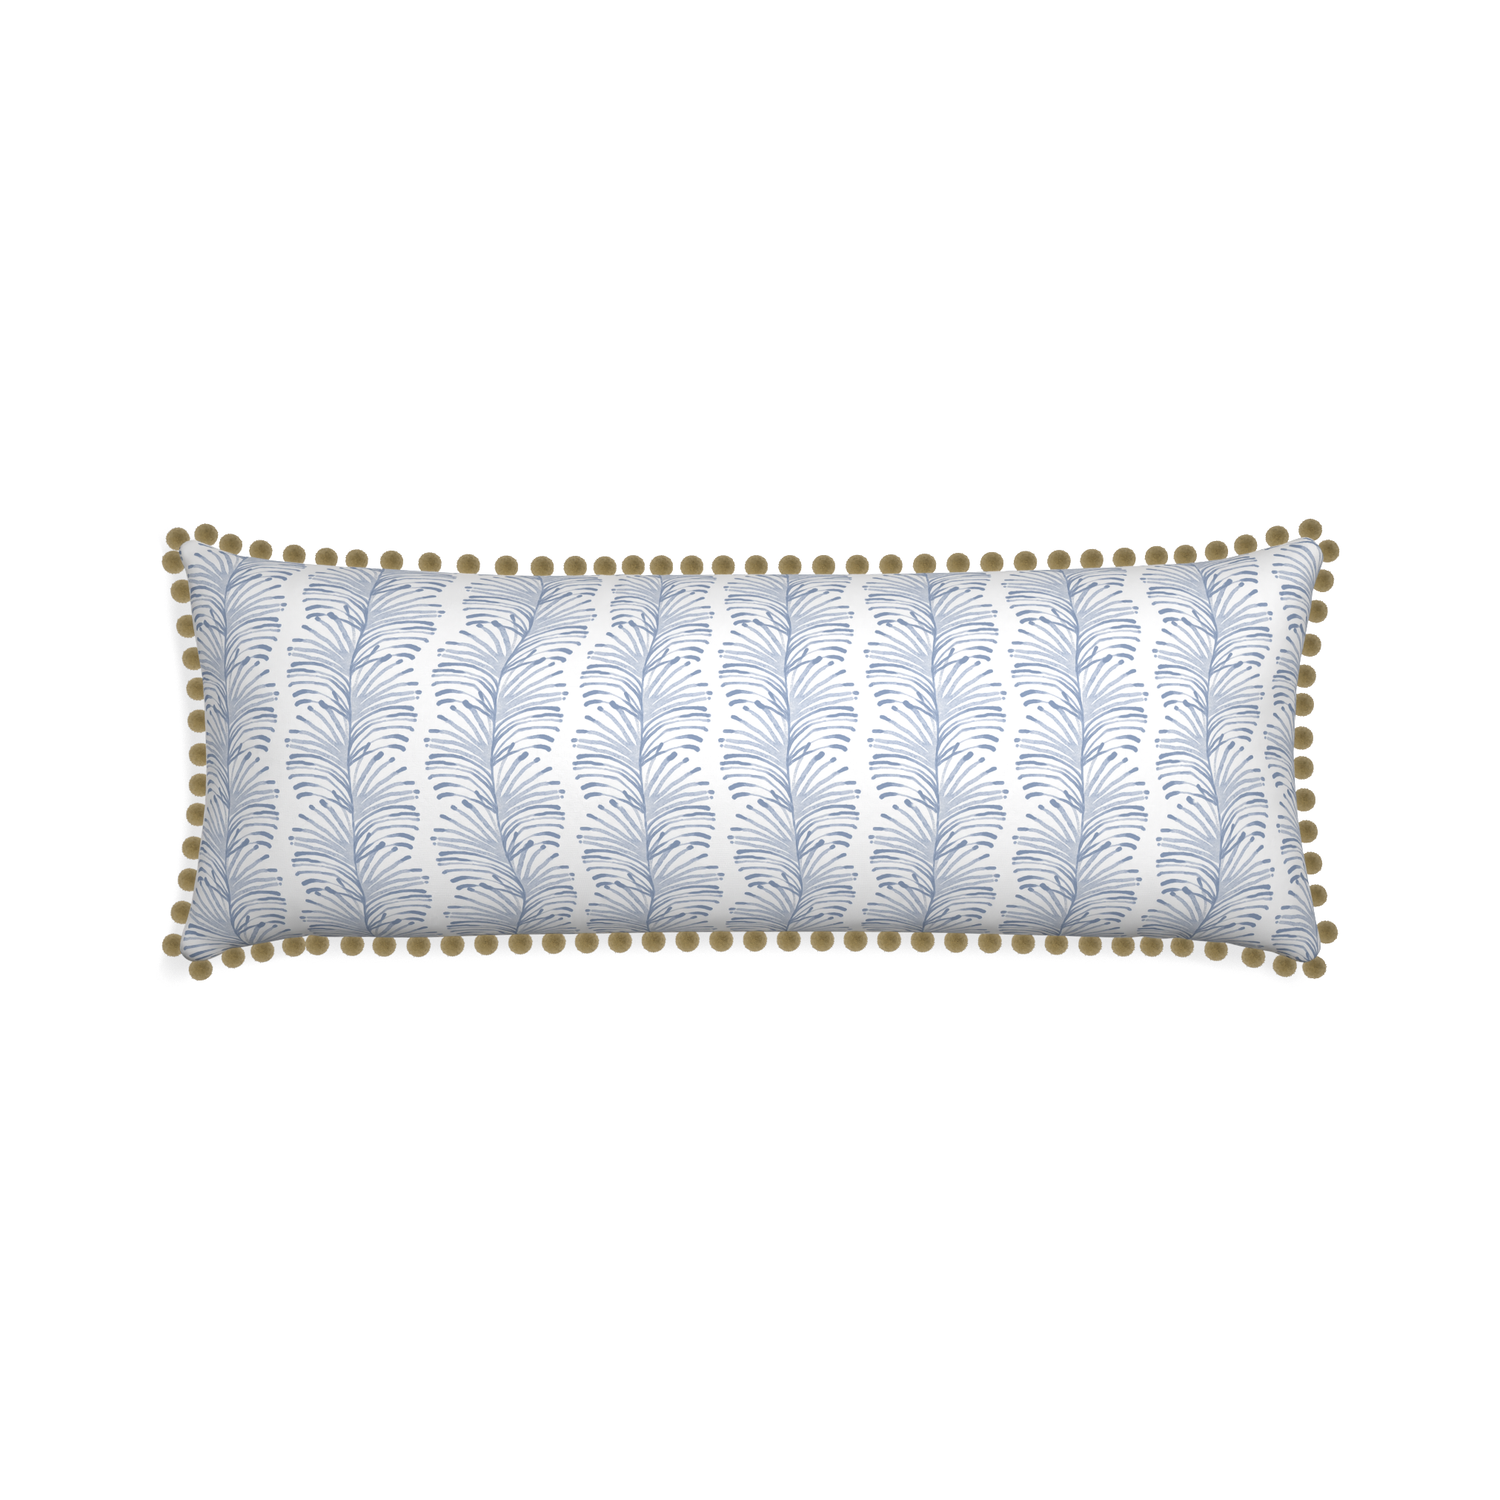 Xl-lumbar emma sky custom pillow with olive pom pom on white background